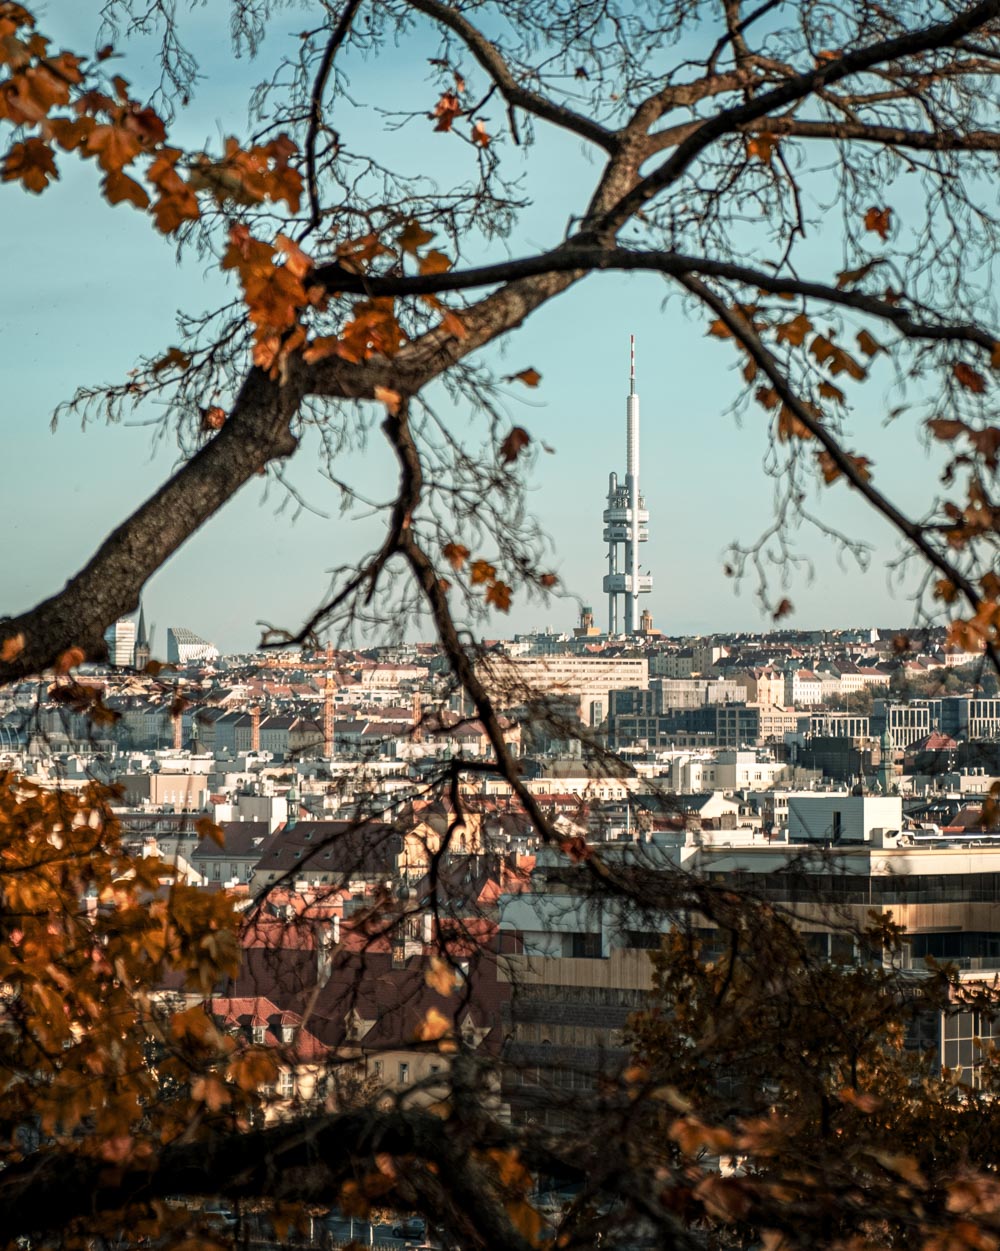 Crisp Autumn walk – Letna, Prague, Czech Republic, 2021